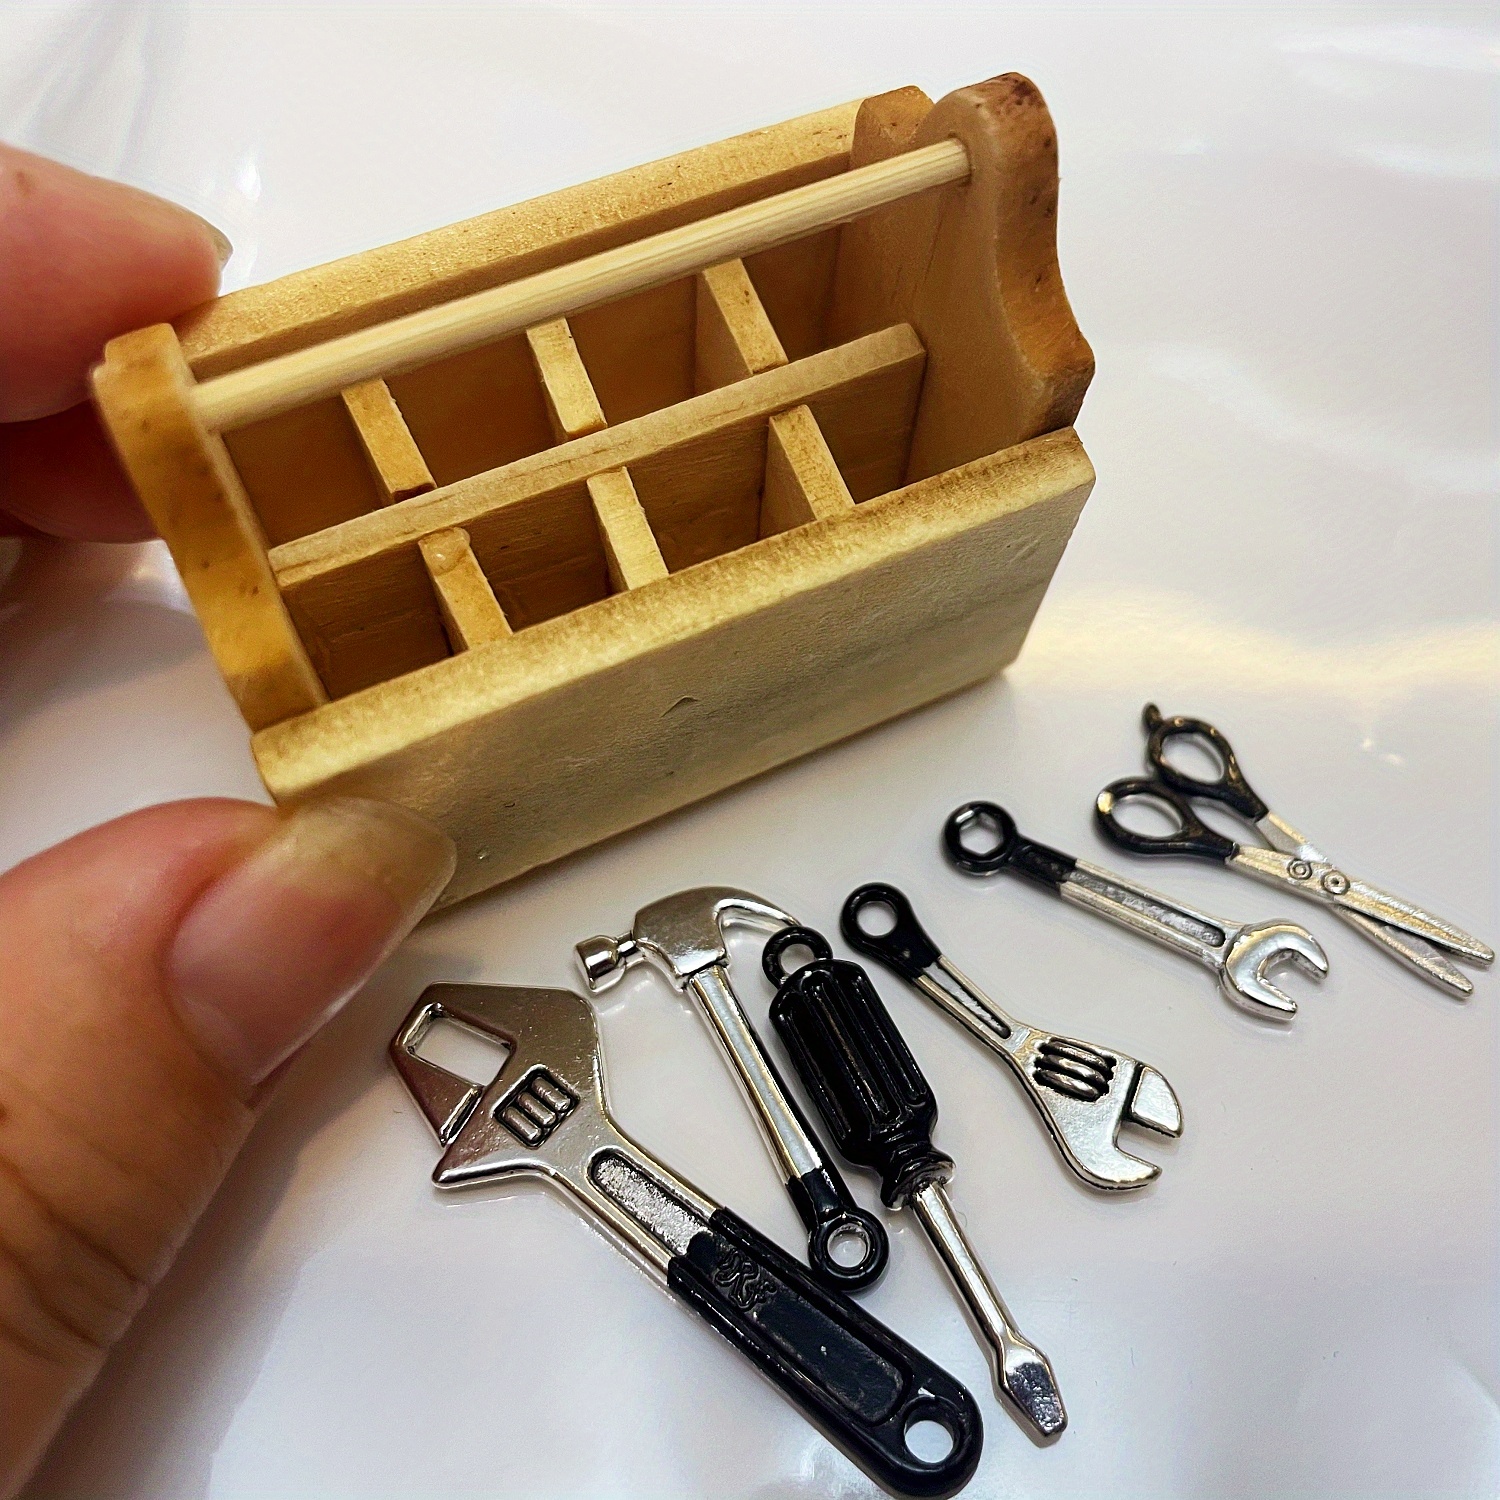 1/8pcs/set Mini Tools/Wooden Box Ornament, Miniature DIY House Accessories,  Toolbox Metal Alloy Repair Tool Set Model, Small Furniture Mini Crafts Sce